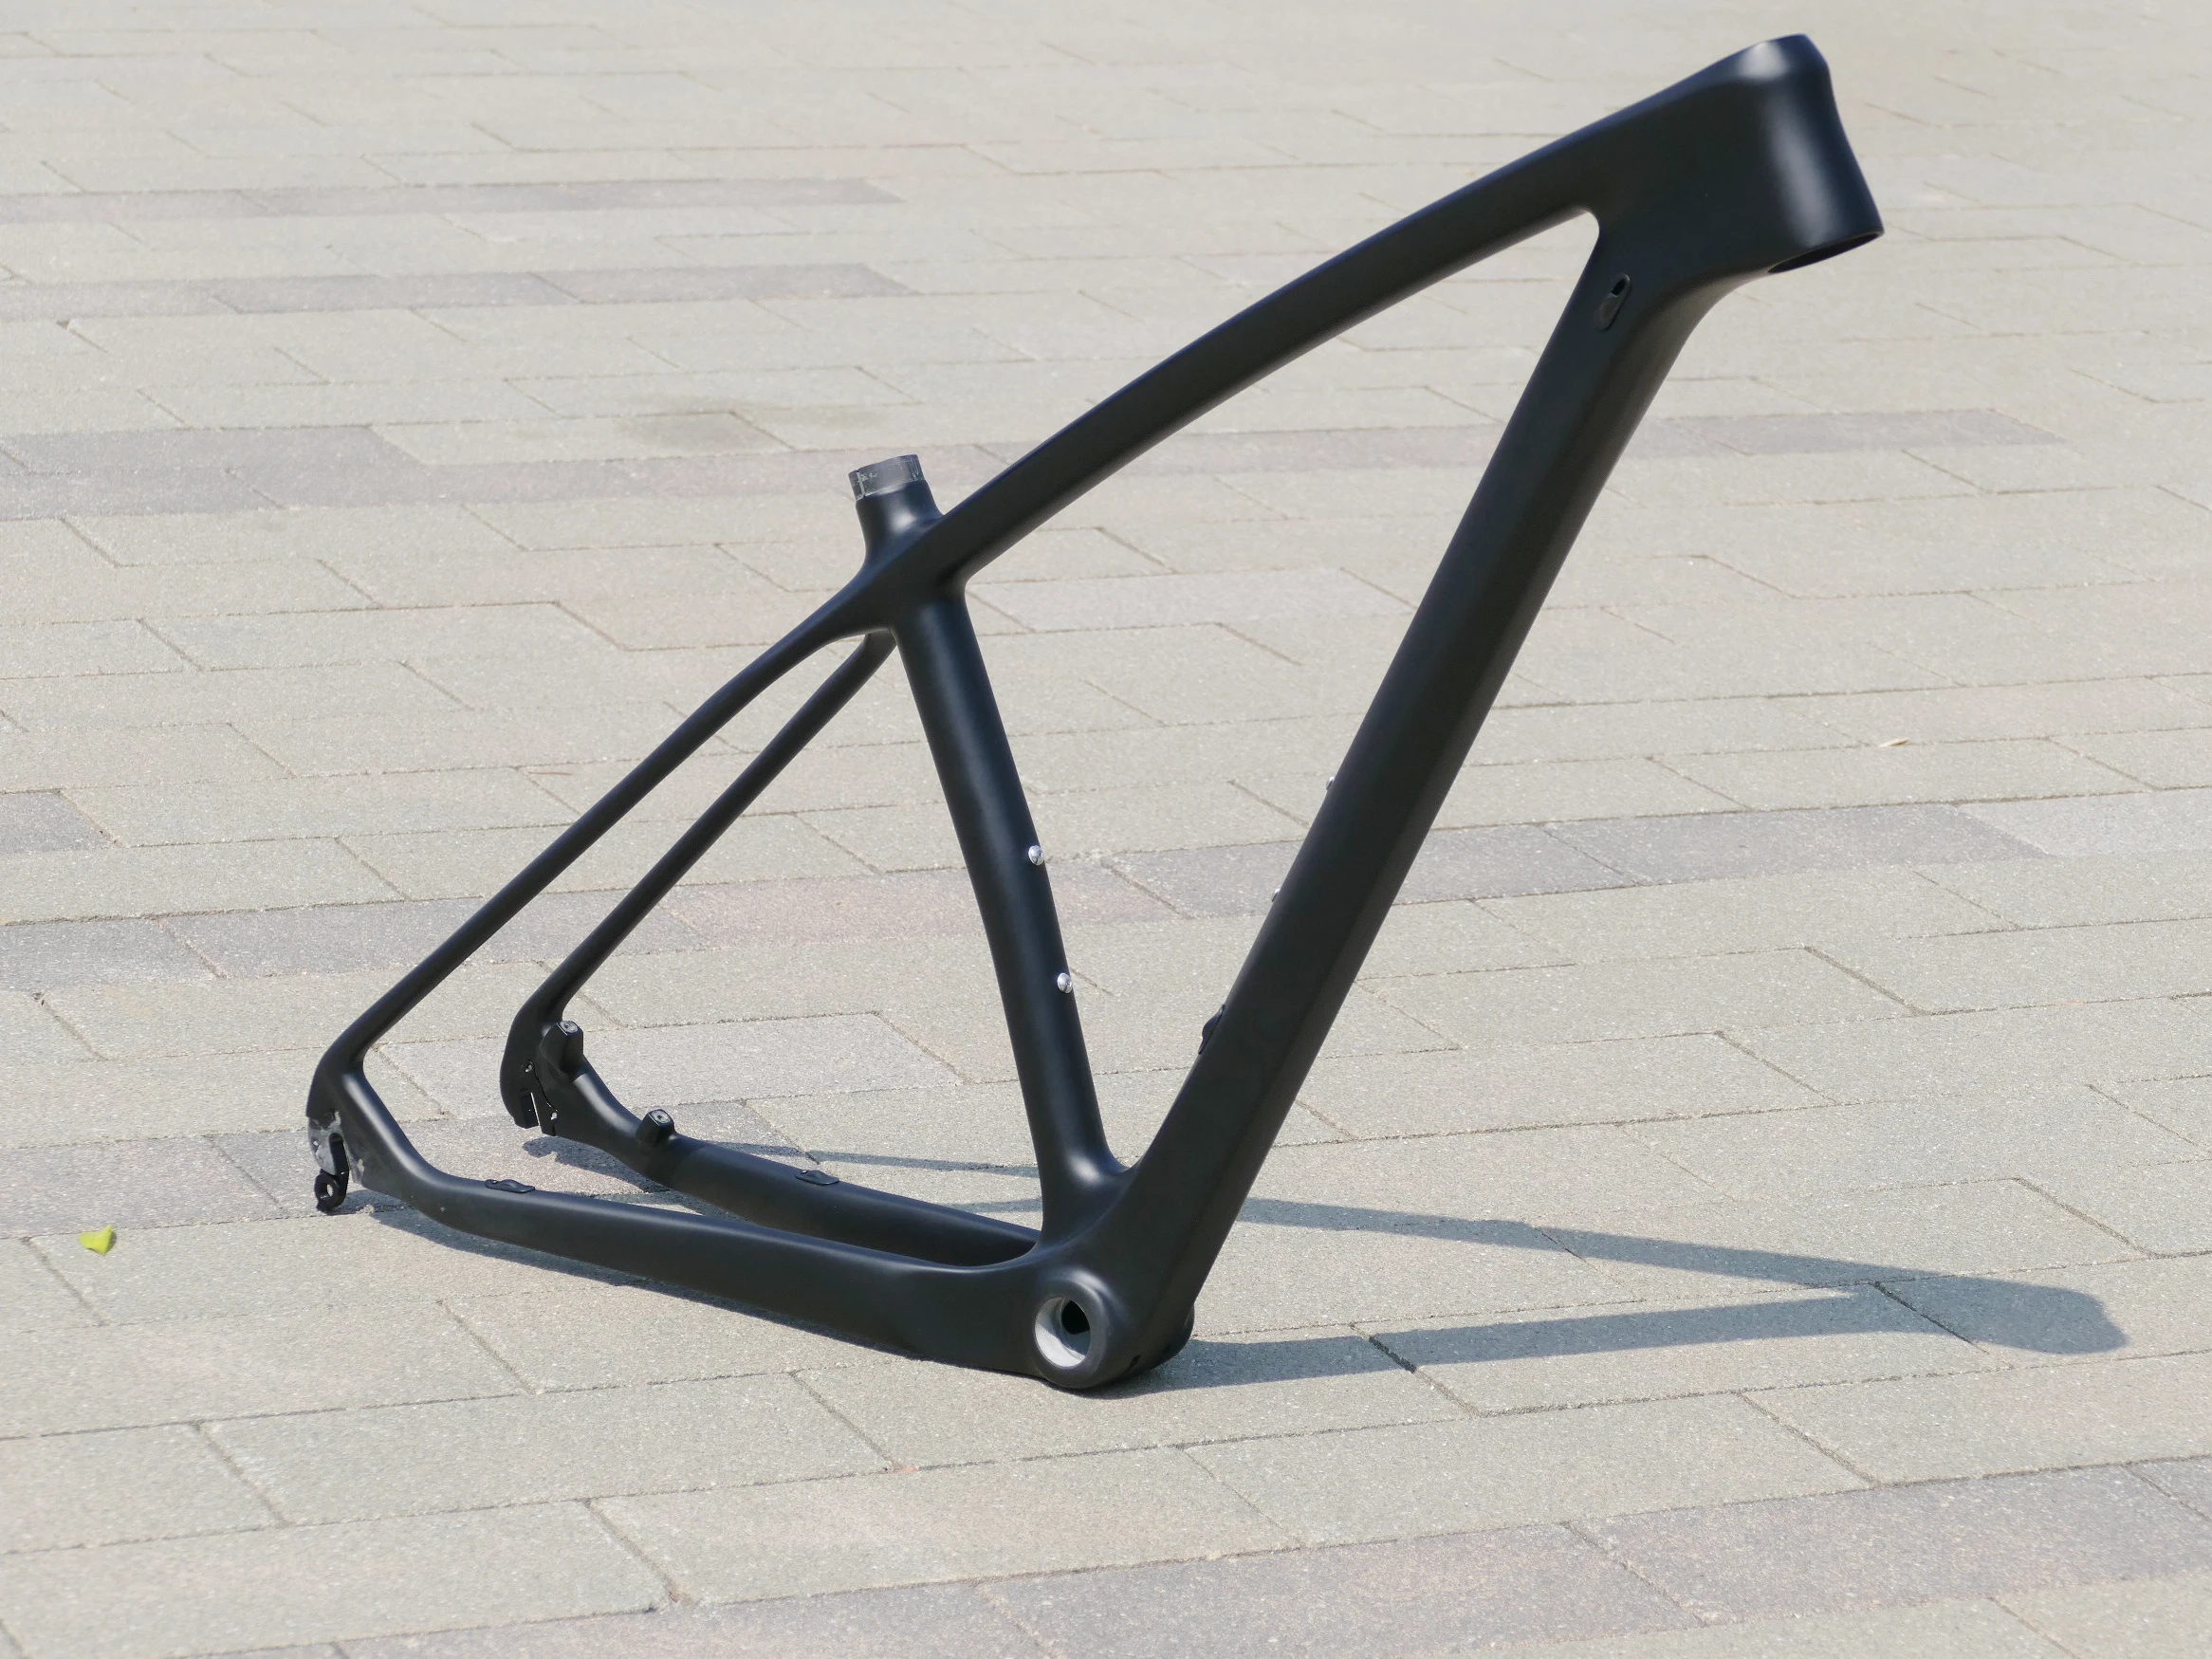 

Углеродная рама для горного велосипеда 2020 дюйма, 29ER, полностью карбоновая рама для горного велосипеда, велосипедная Рама, сквозная ось 15 / 17 / 19 дюймов, 142*12 мм/QR 135 мм